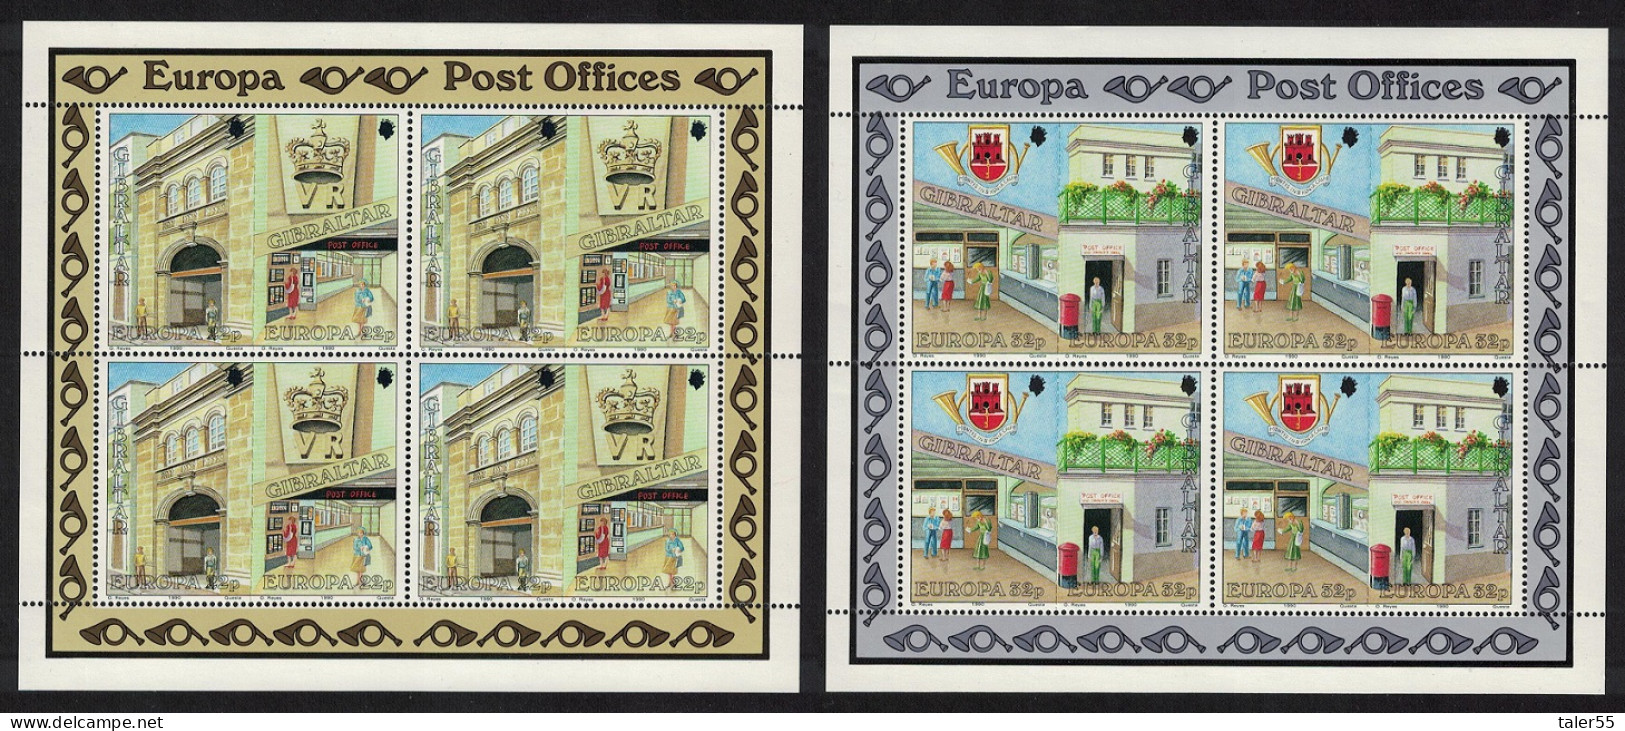 Gibraltar Europa CEPT Post Offices 4v Sheetlets 1990 MNH SG#626-629 Sc#562-565 - Gibilterra